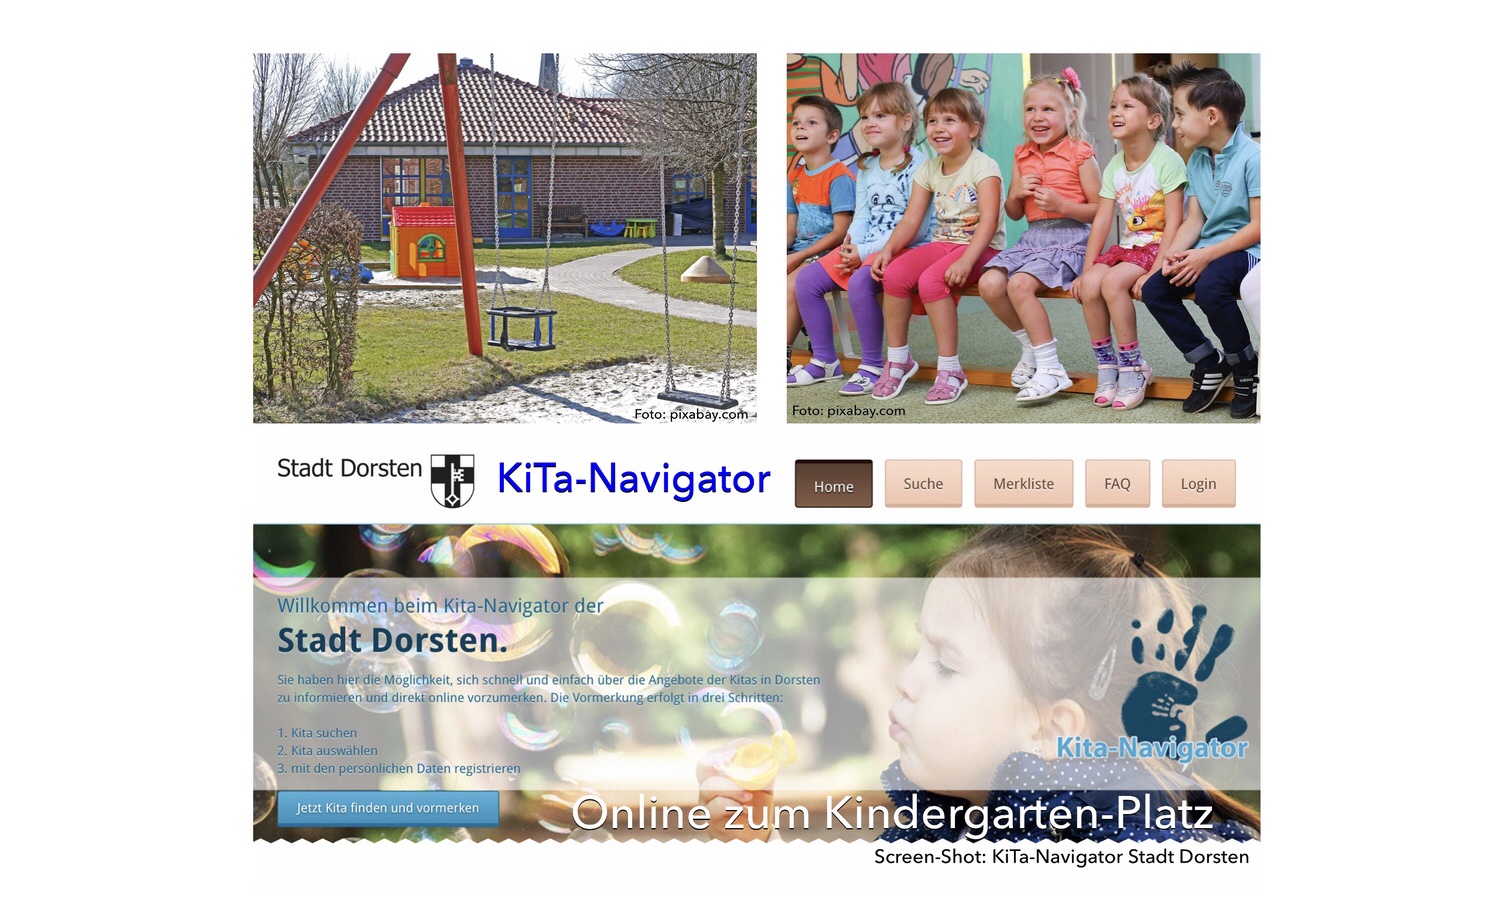 KiTa-Navigator: Online zum Kindergarten-Platz oder zur Beratung für einen Platz in der Tagespflege